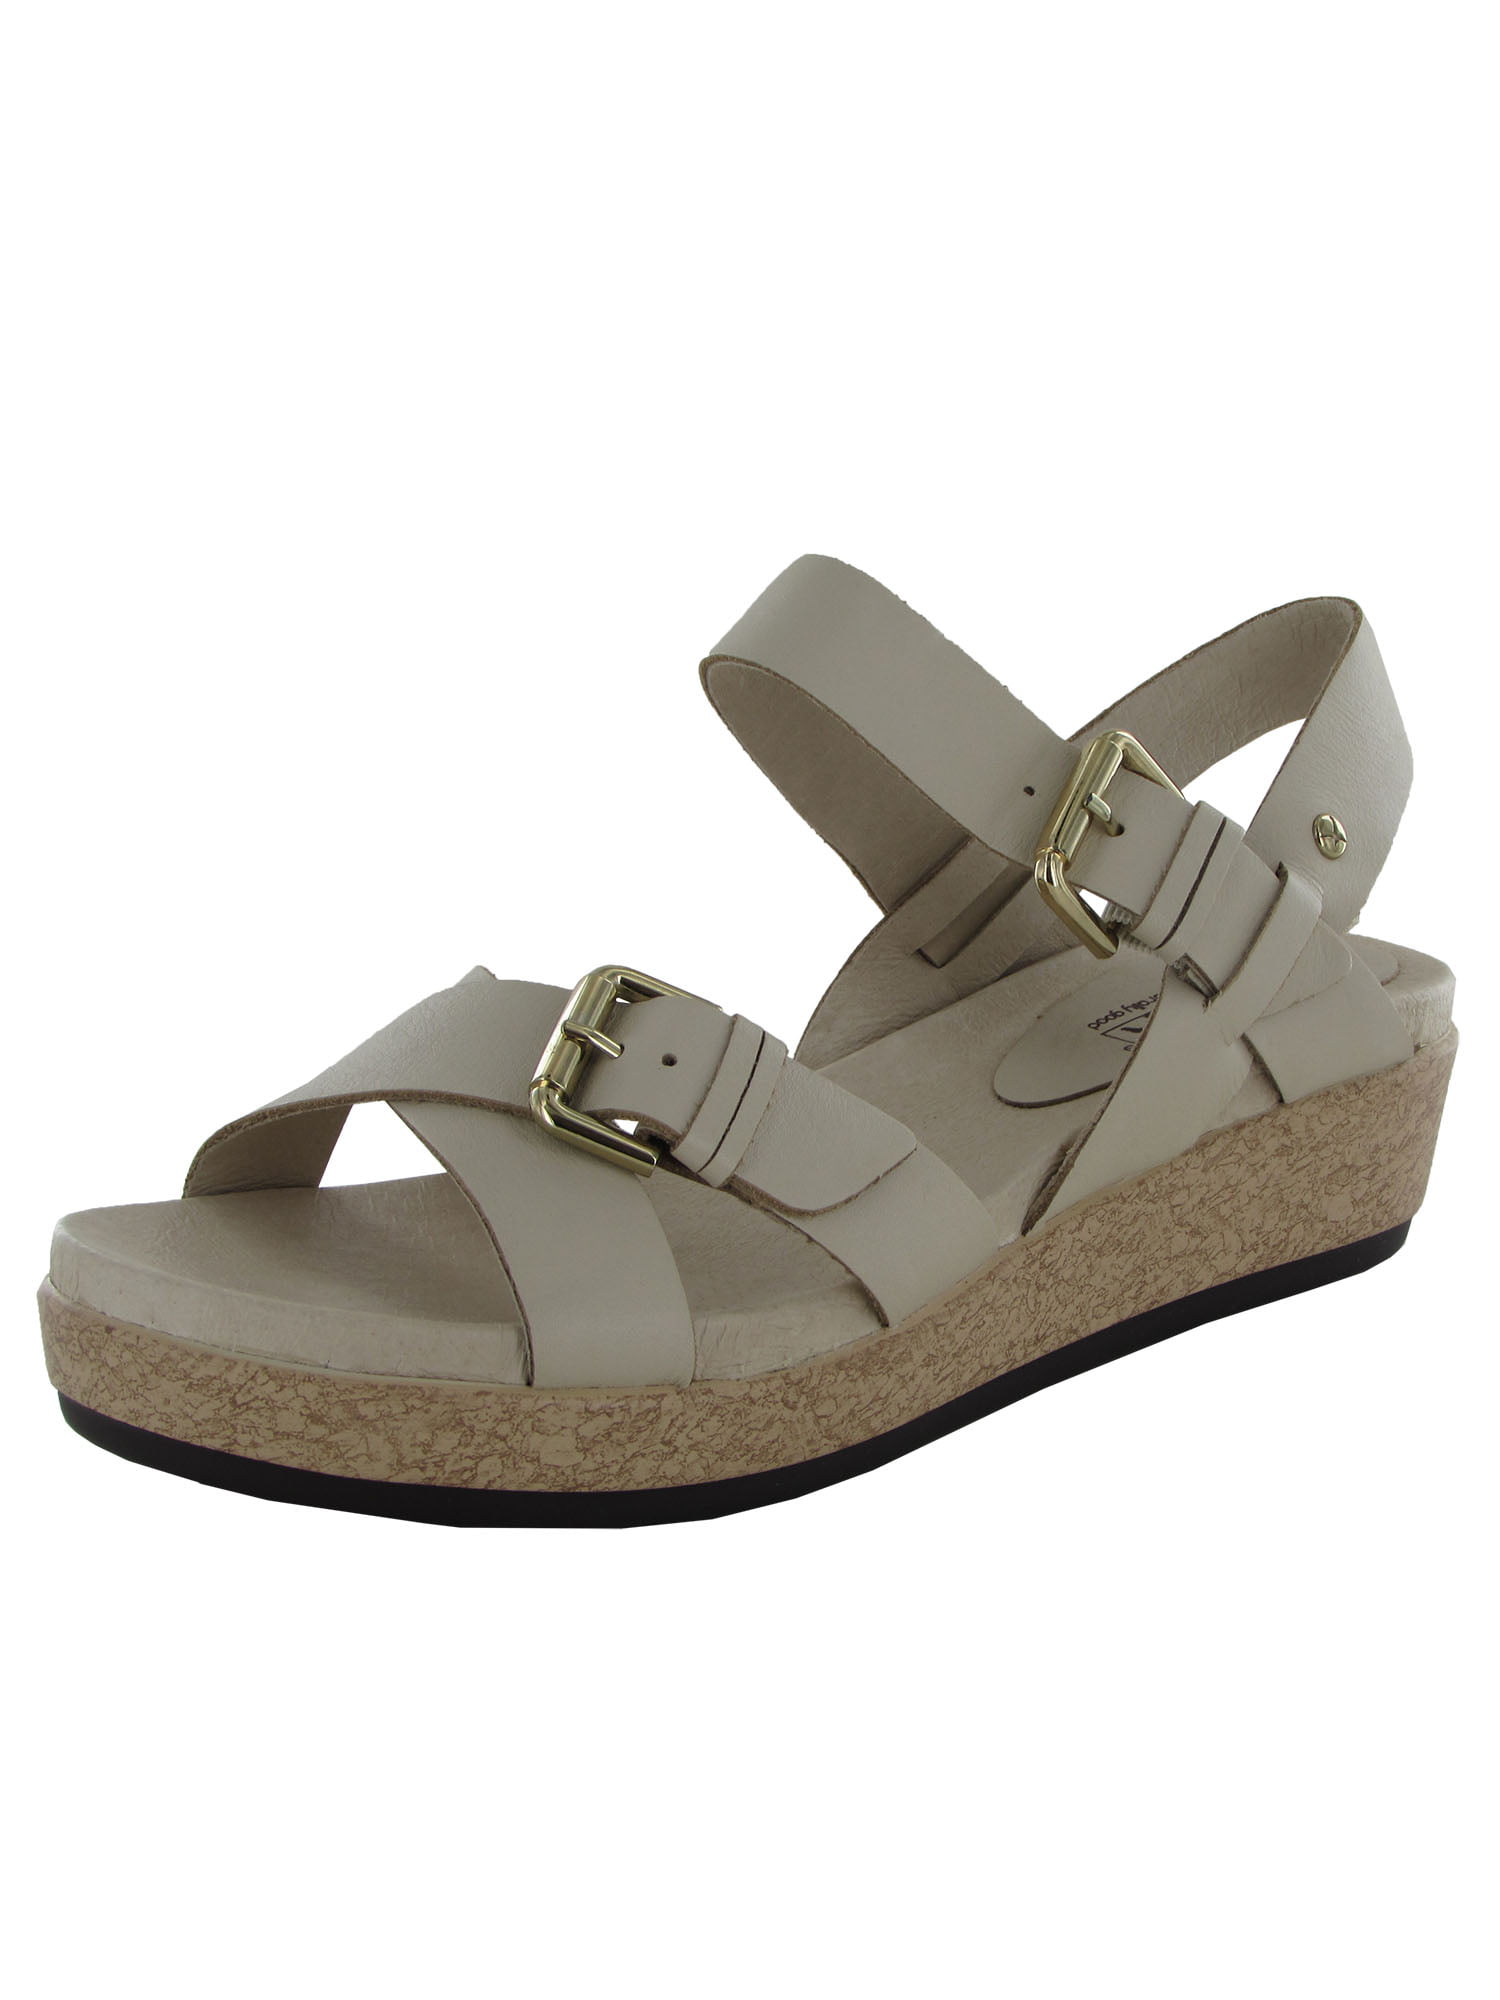 Pikolinos Womens Mykonos W1G-1589 Sandal Shoes, Marfil, 41 EU /  US  